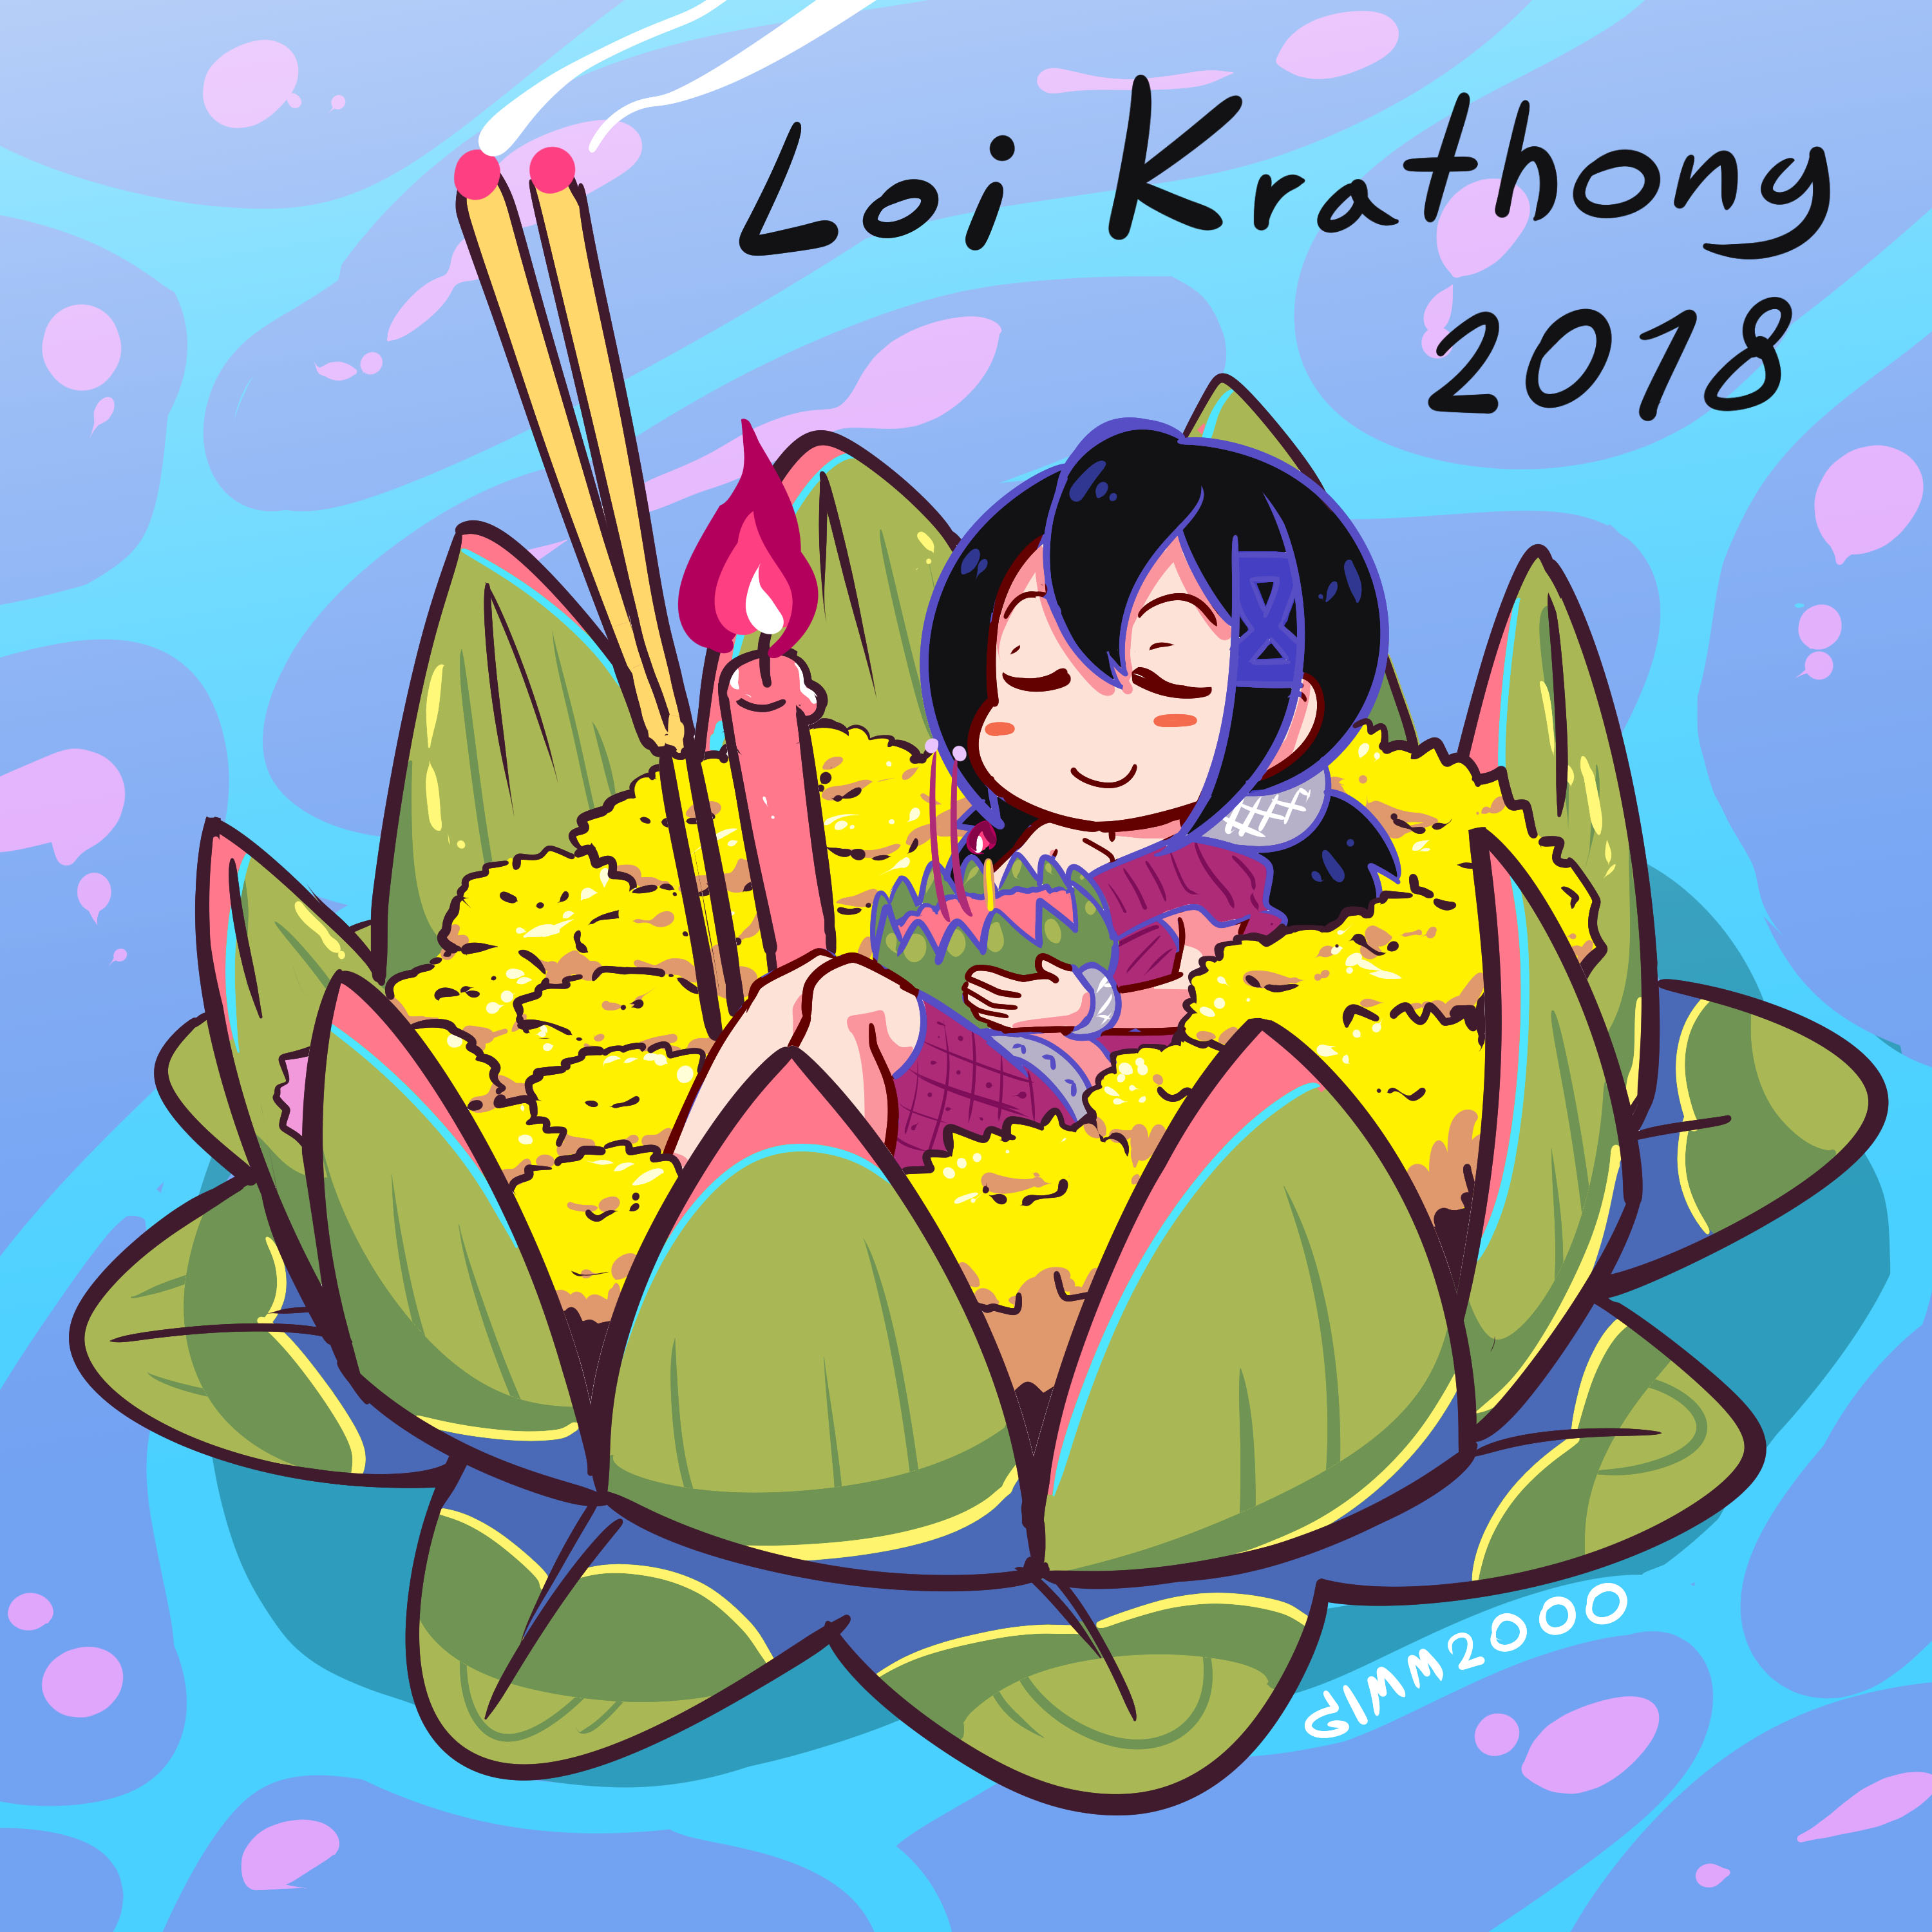 Loi Krathong 2018